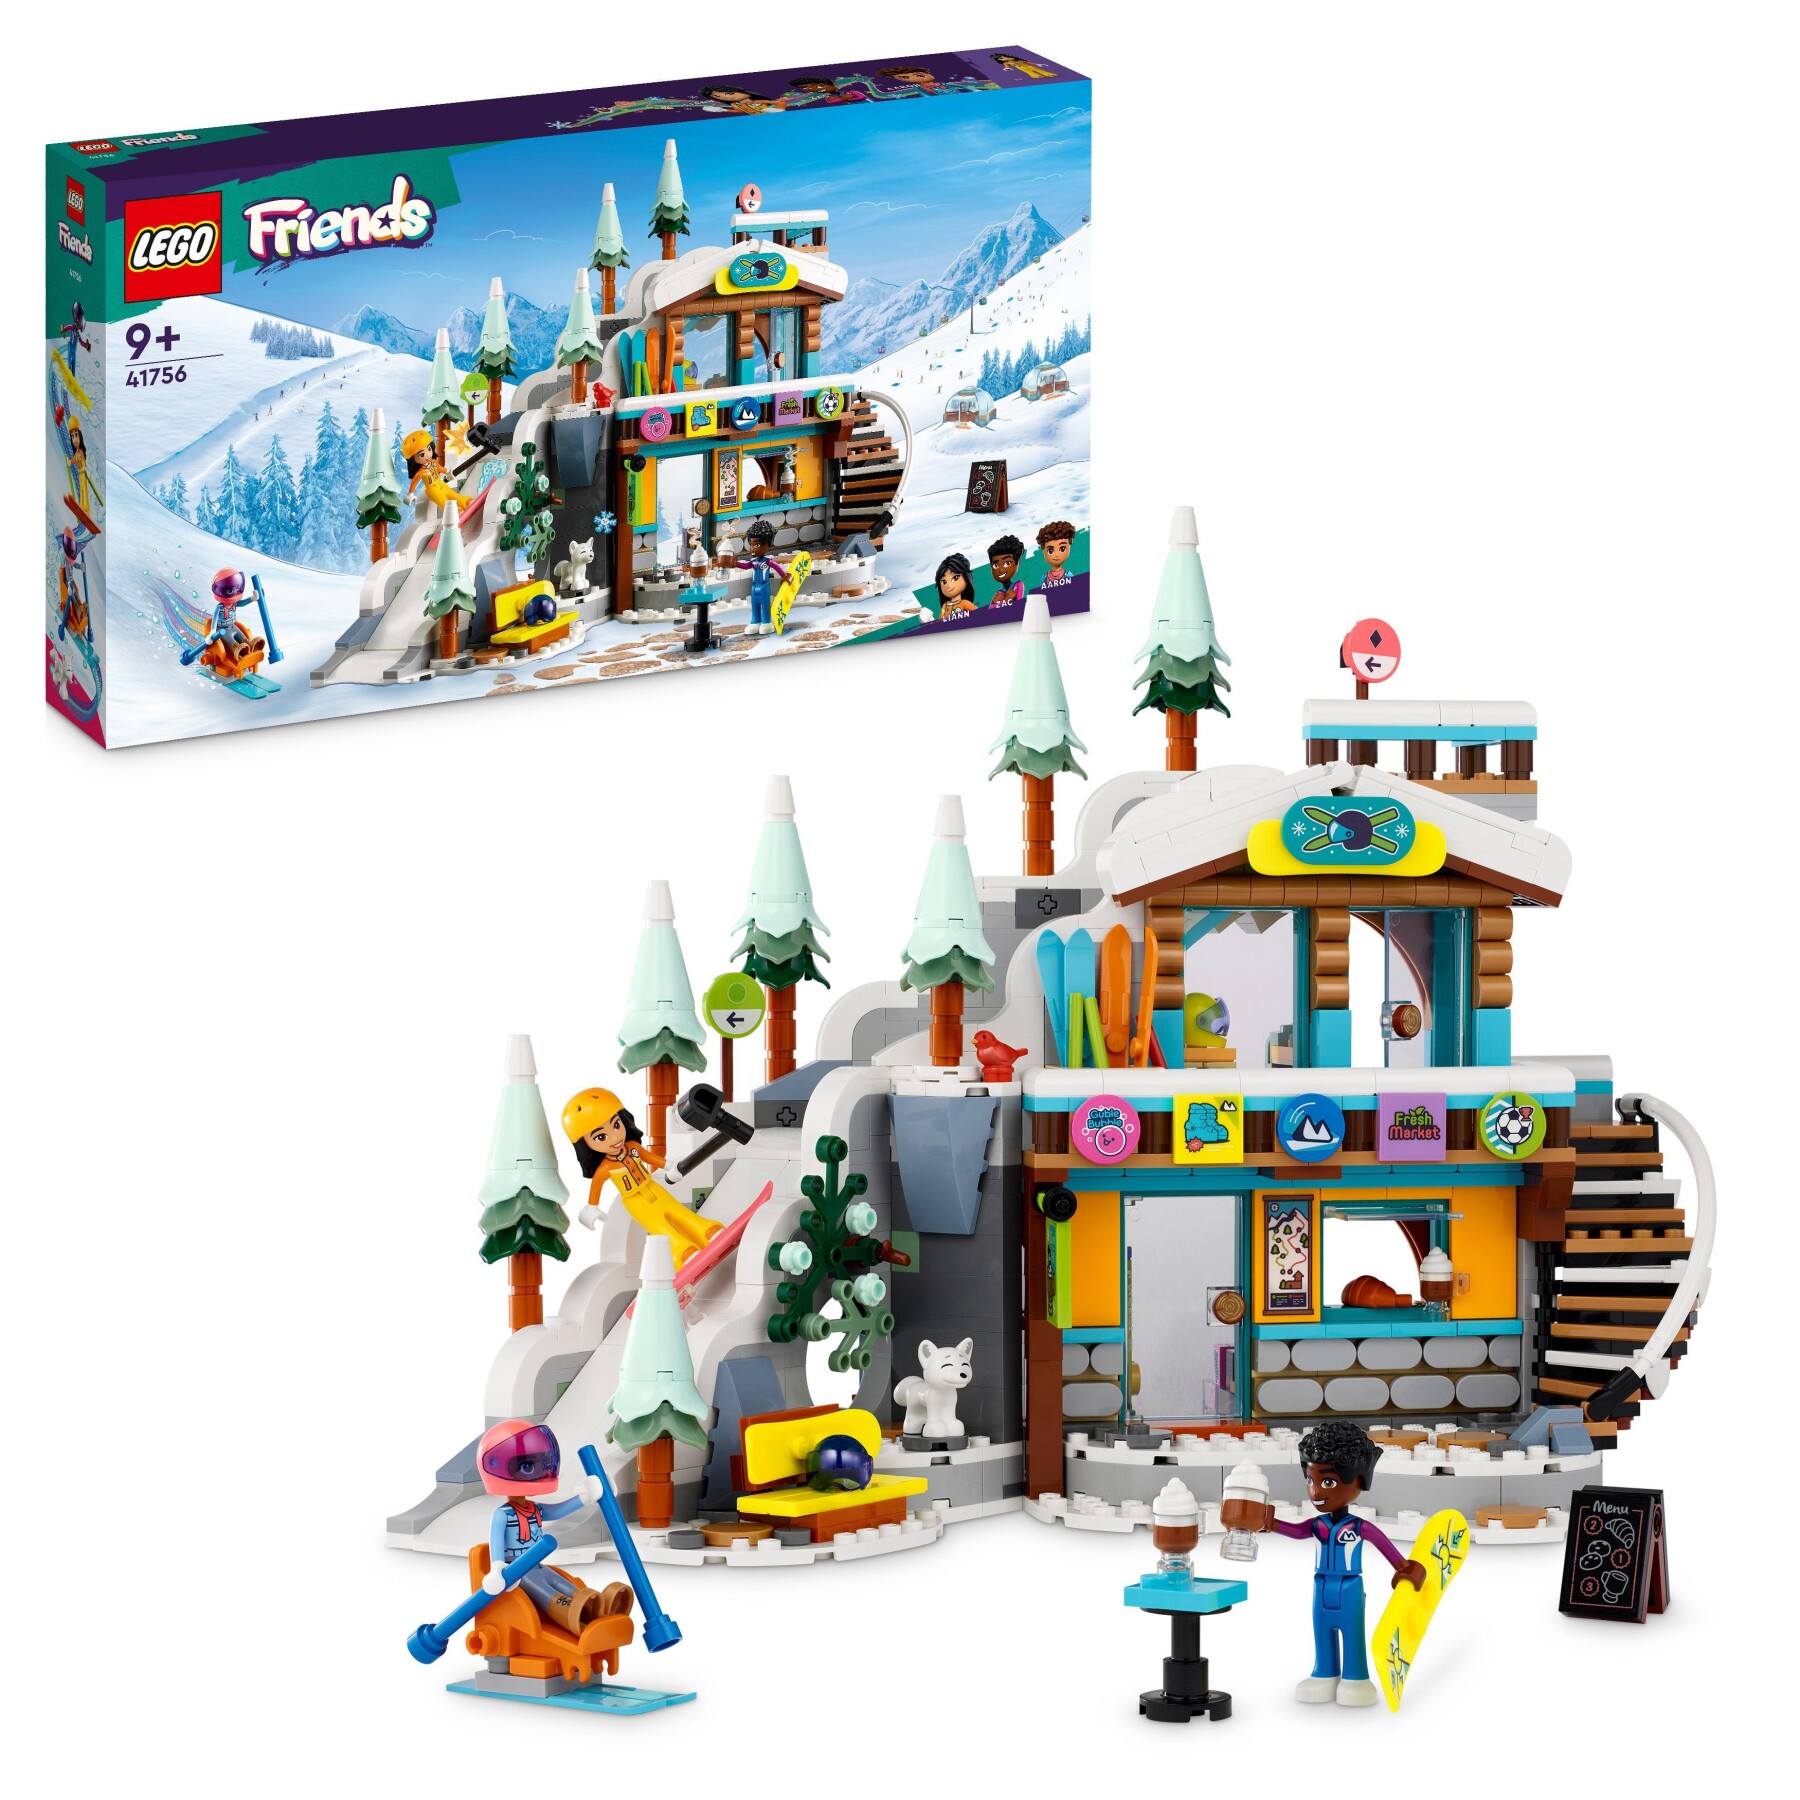 LEGO IDEAS 21343 VILLAGGIO VICHINGO, KIT MODELLISMO PER ADULTI DA  COSTRUIRE, GRANDE SET IDEA REGALO UOMO, DONNA, LUI E LEI - Toys Center